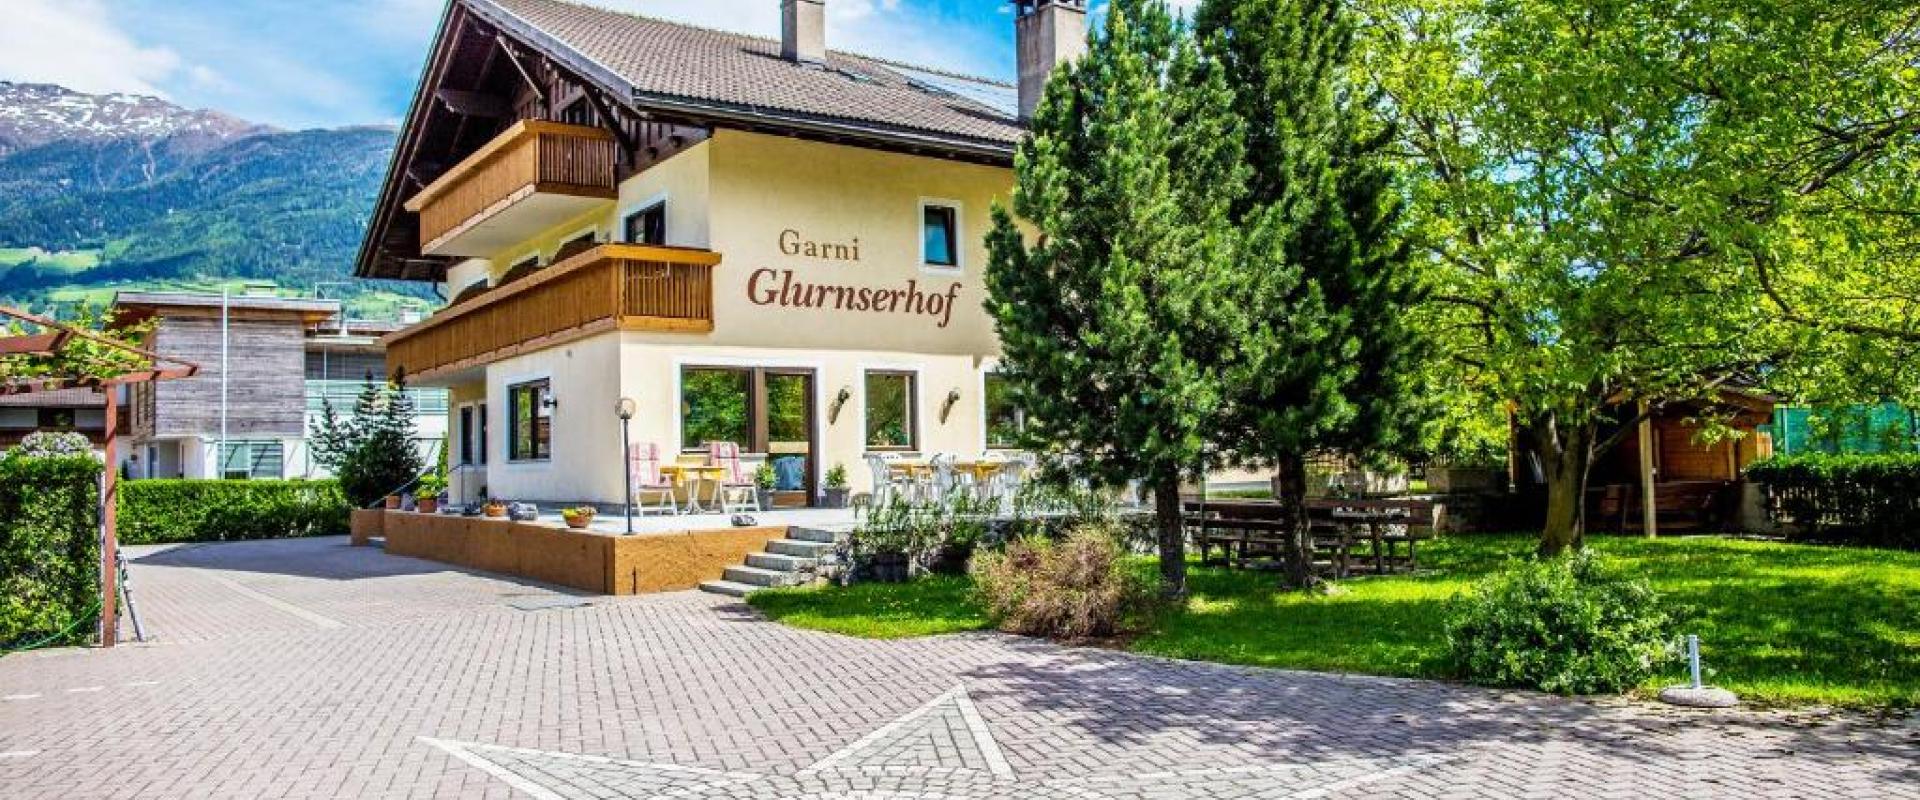 30104 Biker Hotel Garni Glunserhof in Südtirol/Dolomiten.jpg